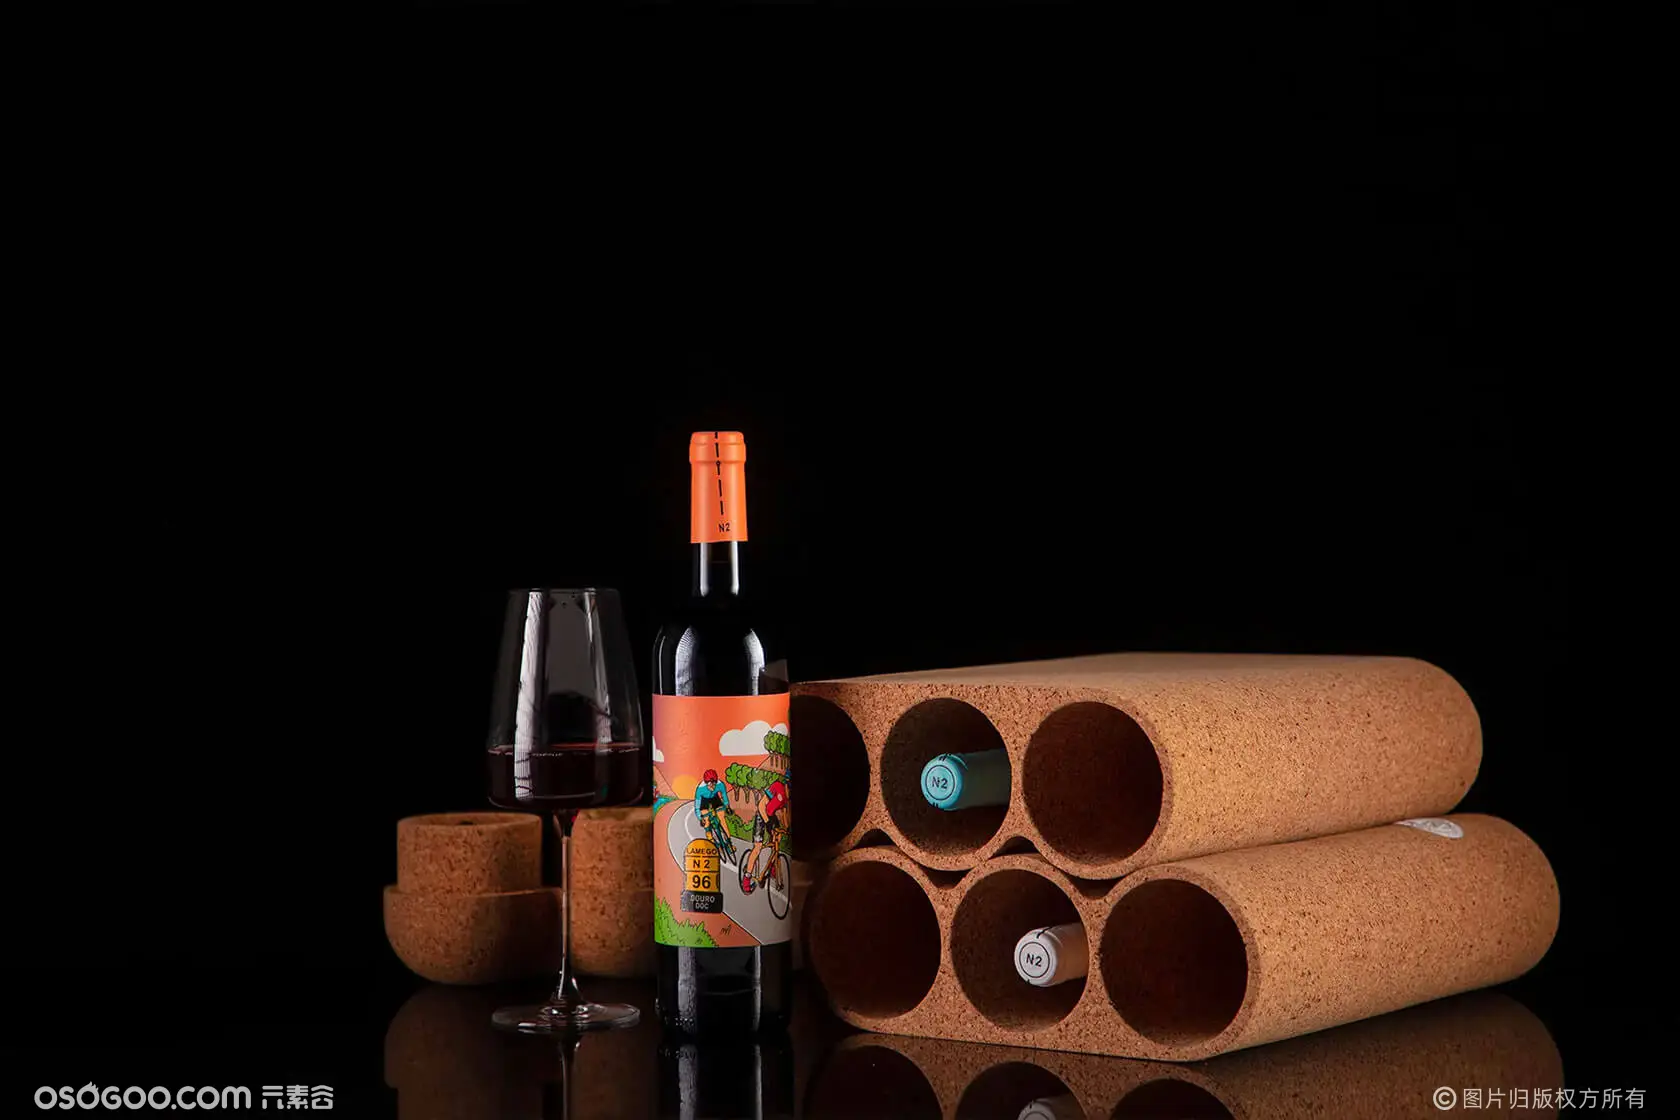 CPACK 背包-葡萄酒包装概念